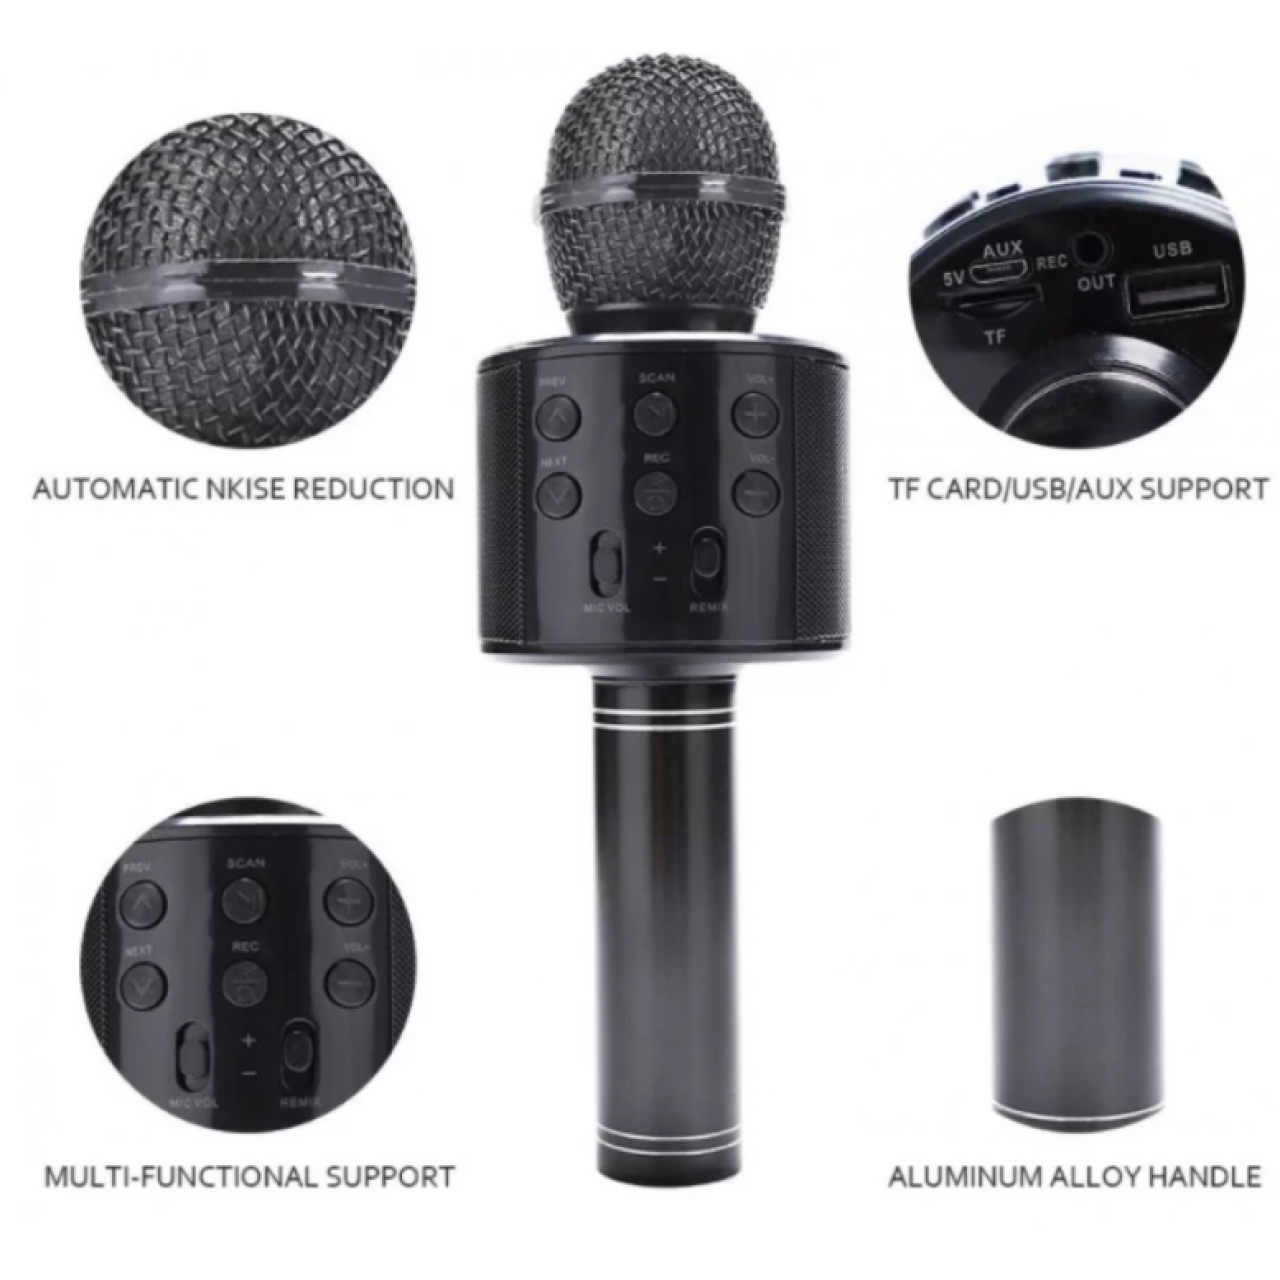 Ασύρματο Μικρόφωνο Bluetooth με Ενσωματωμένο Ηχείο και Karaoke WS-858 - Μαύρο - 5791